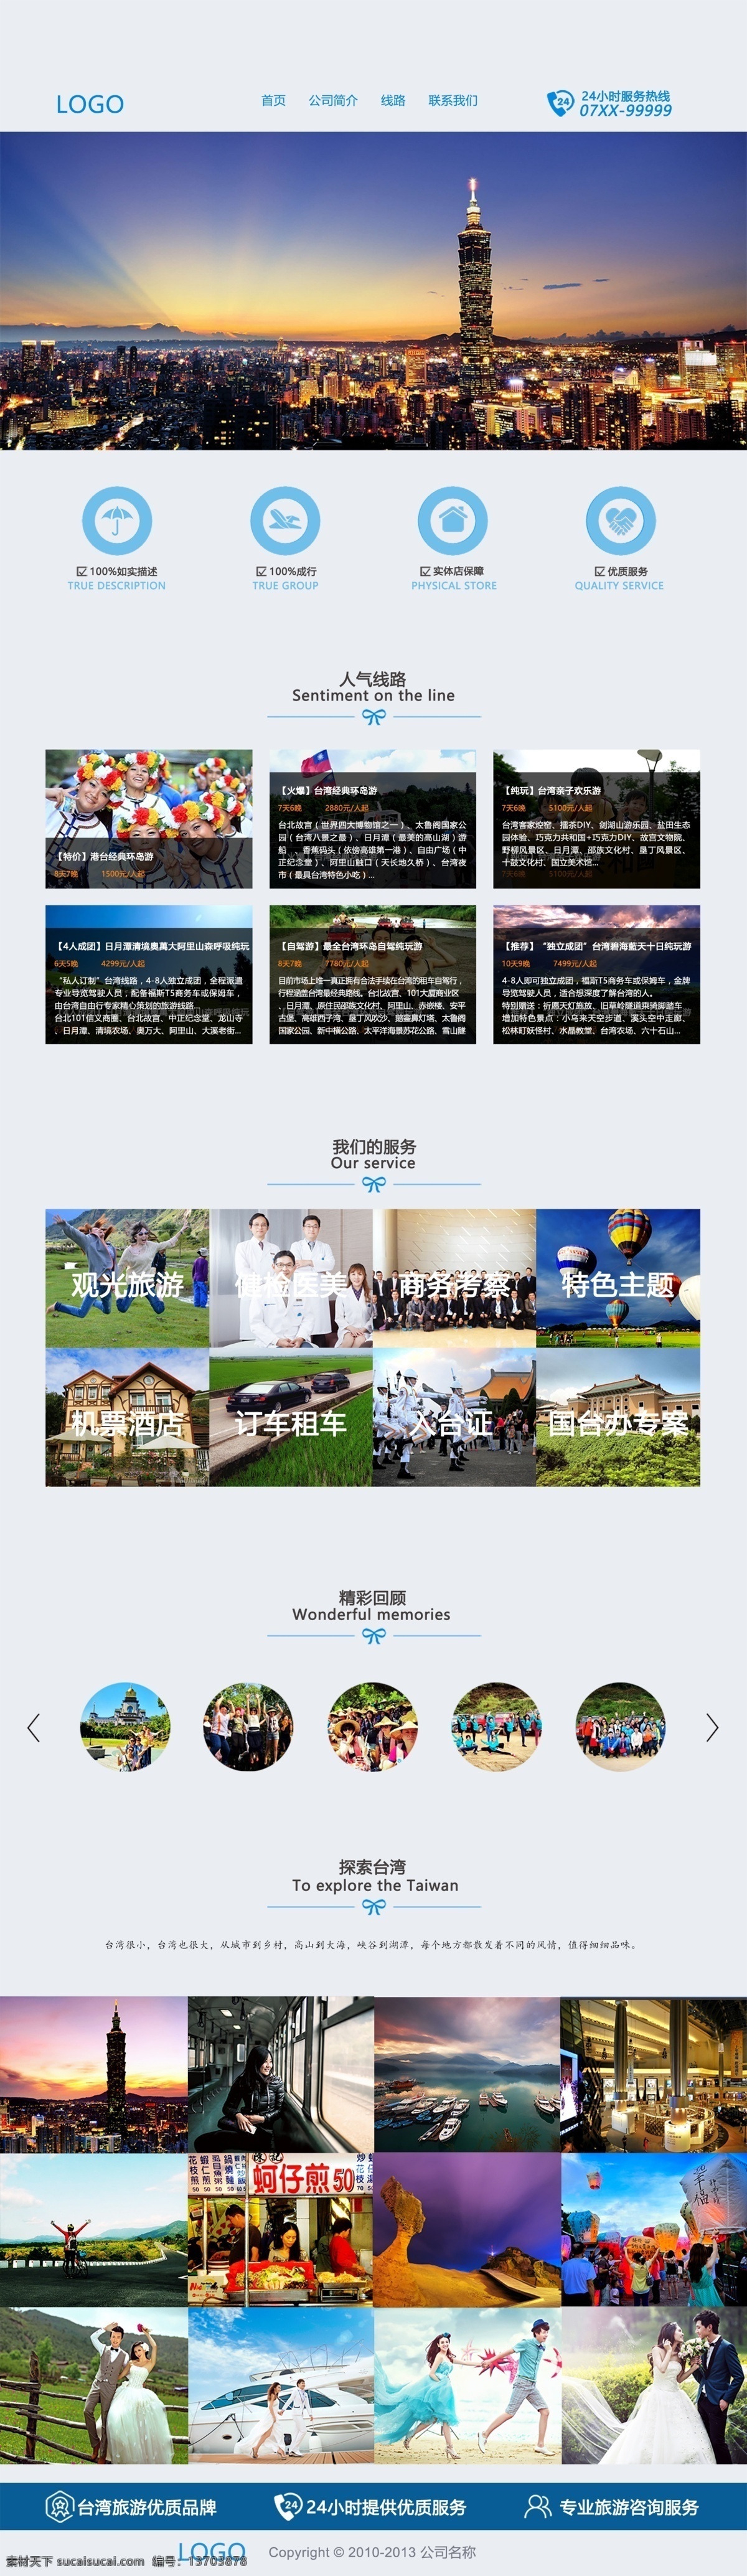 旅游网站首页 旅游 网站 首页 店铺装修 台湾 模板